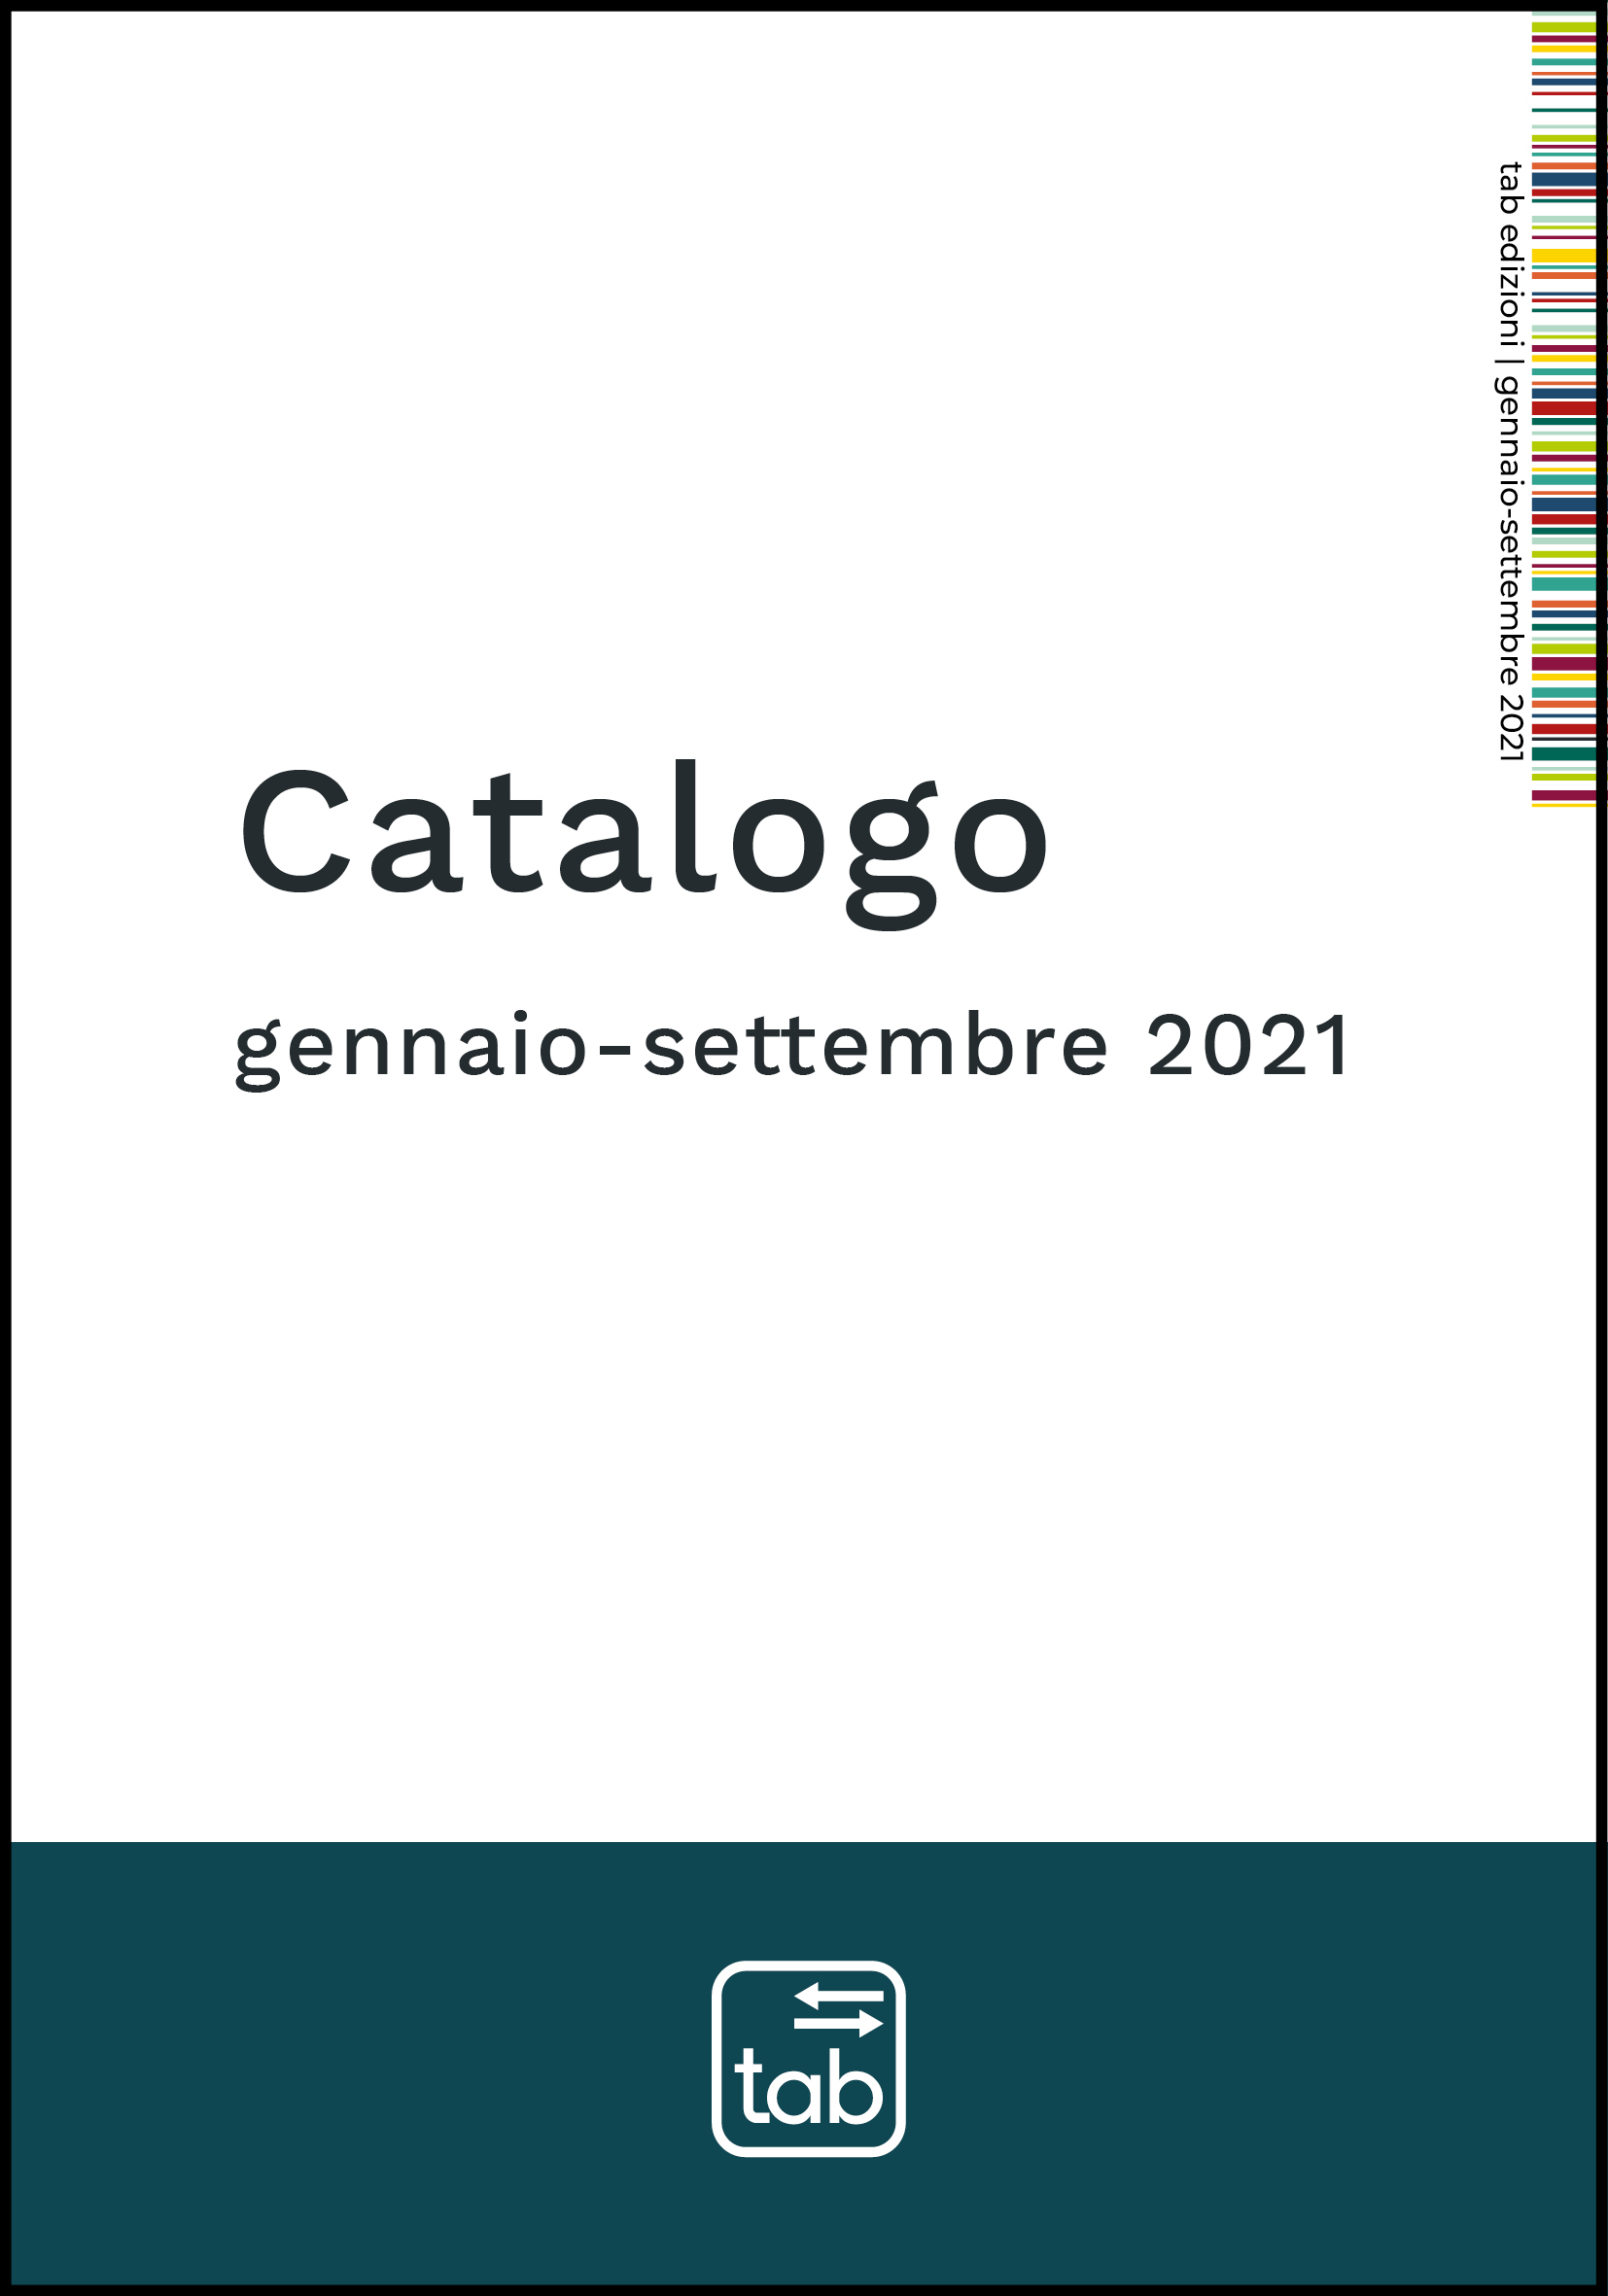 Catalogo 2021